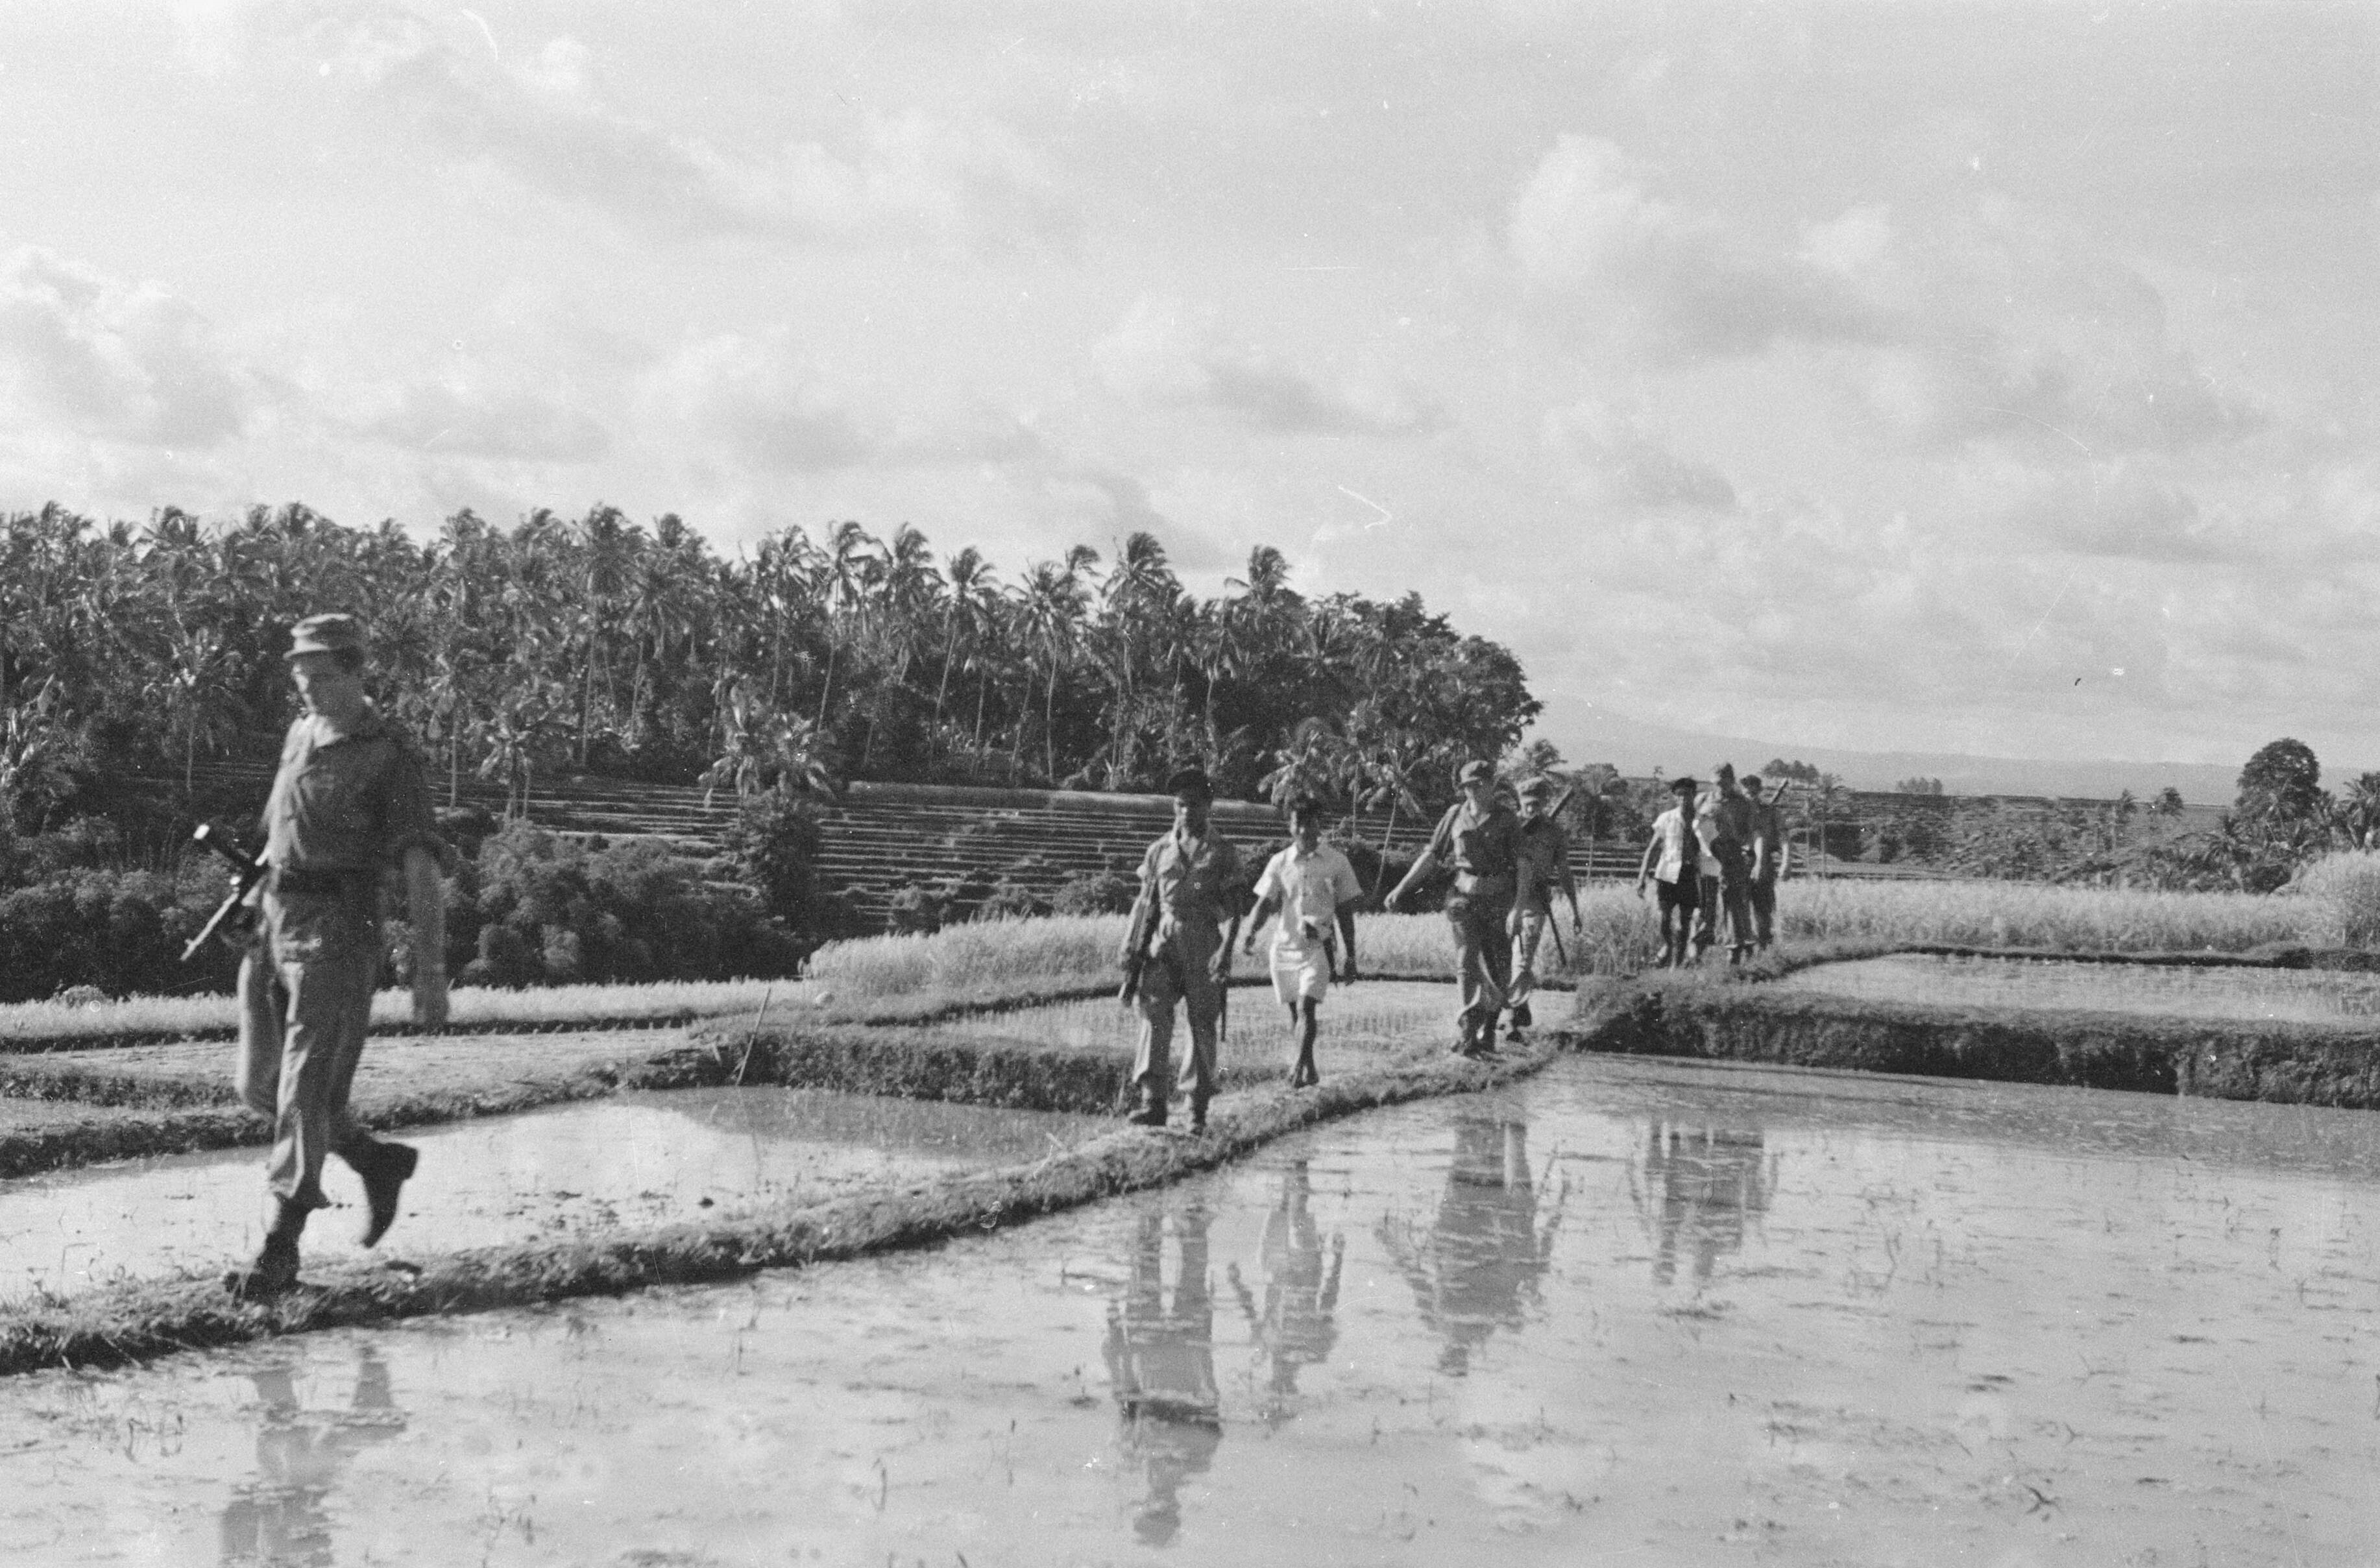 Nederlandse patrouille op Bali, 1948 (foto: P. de Bruijn/DLC)